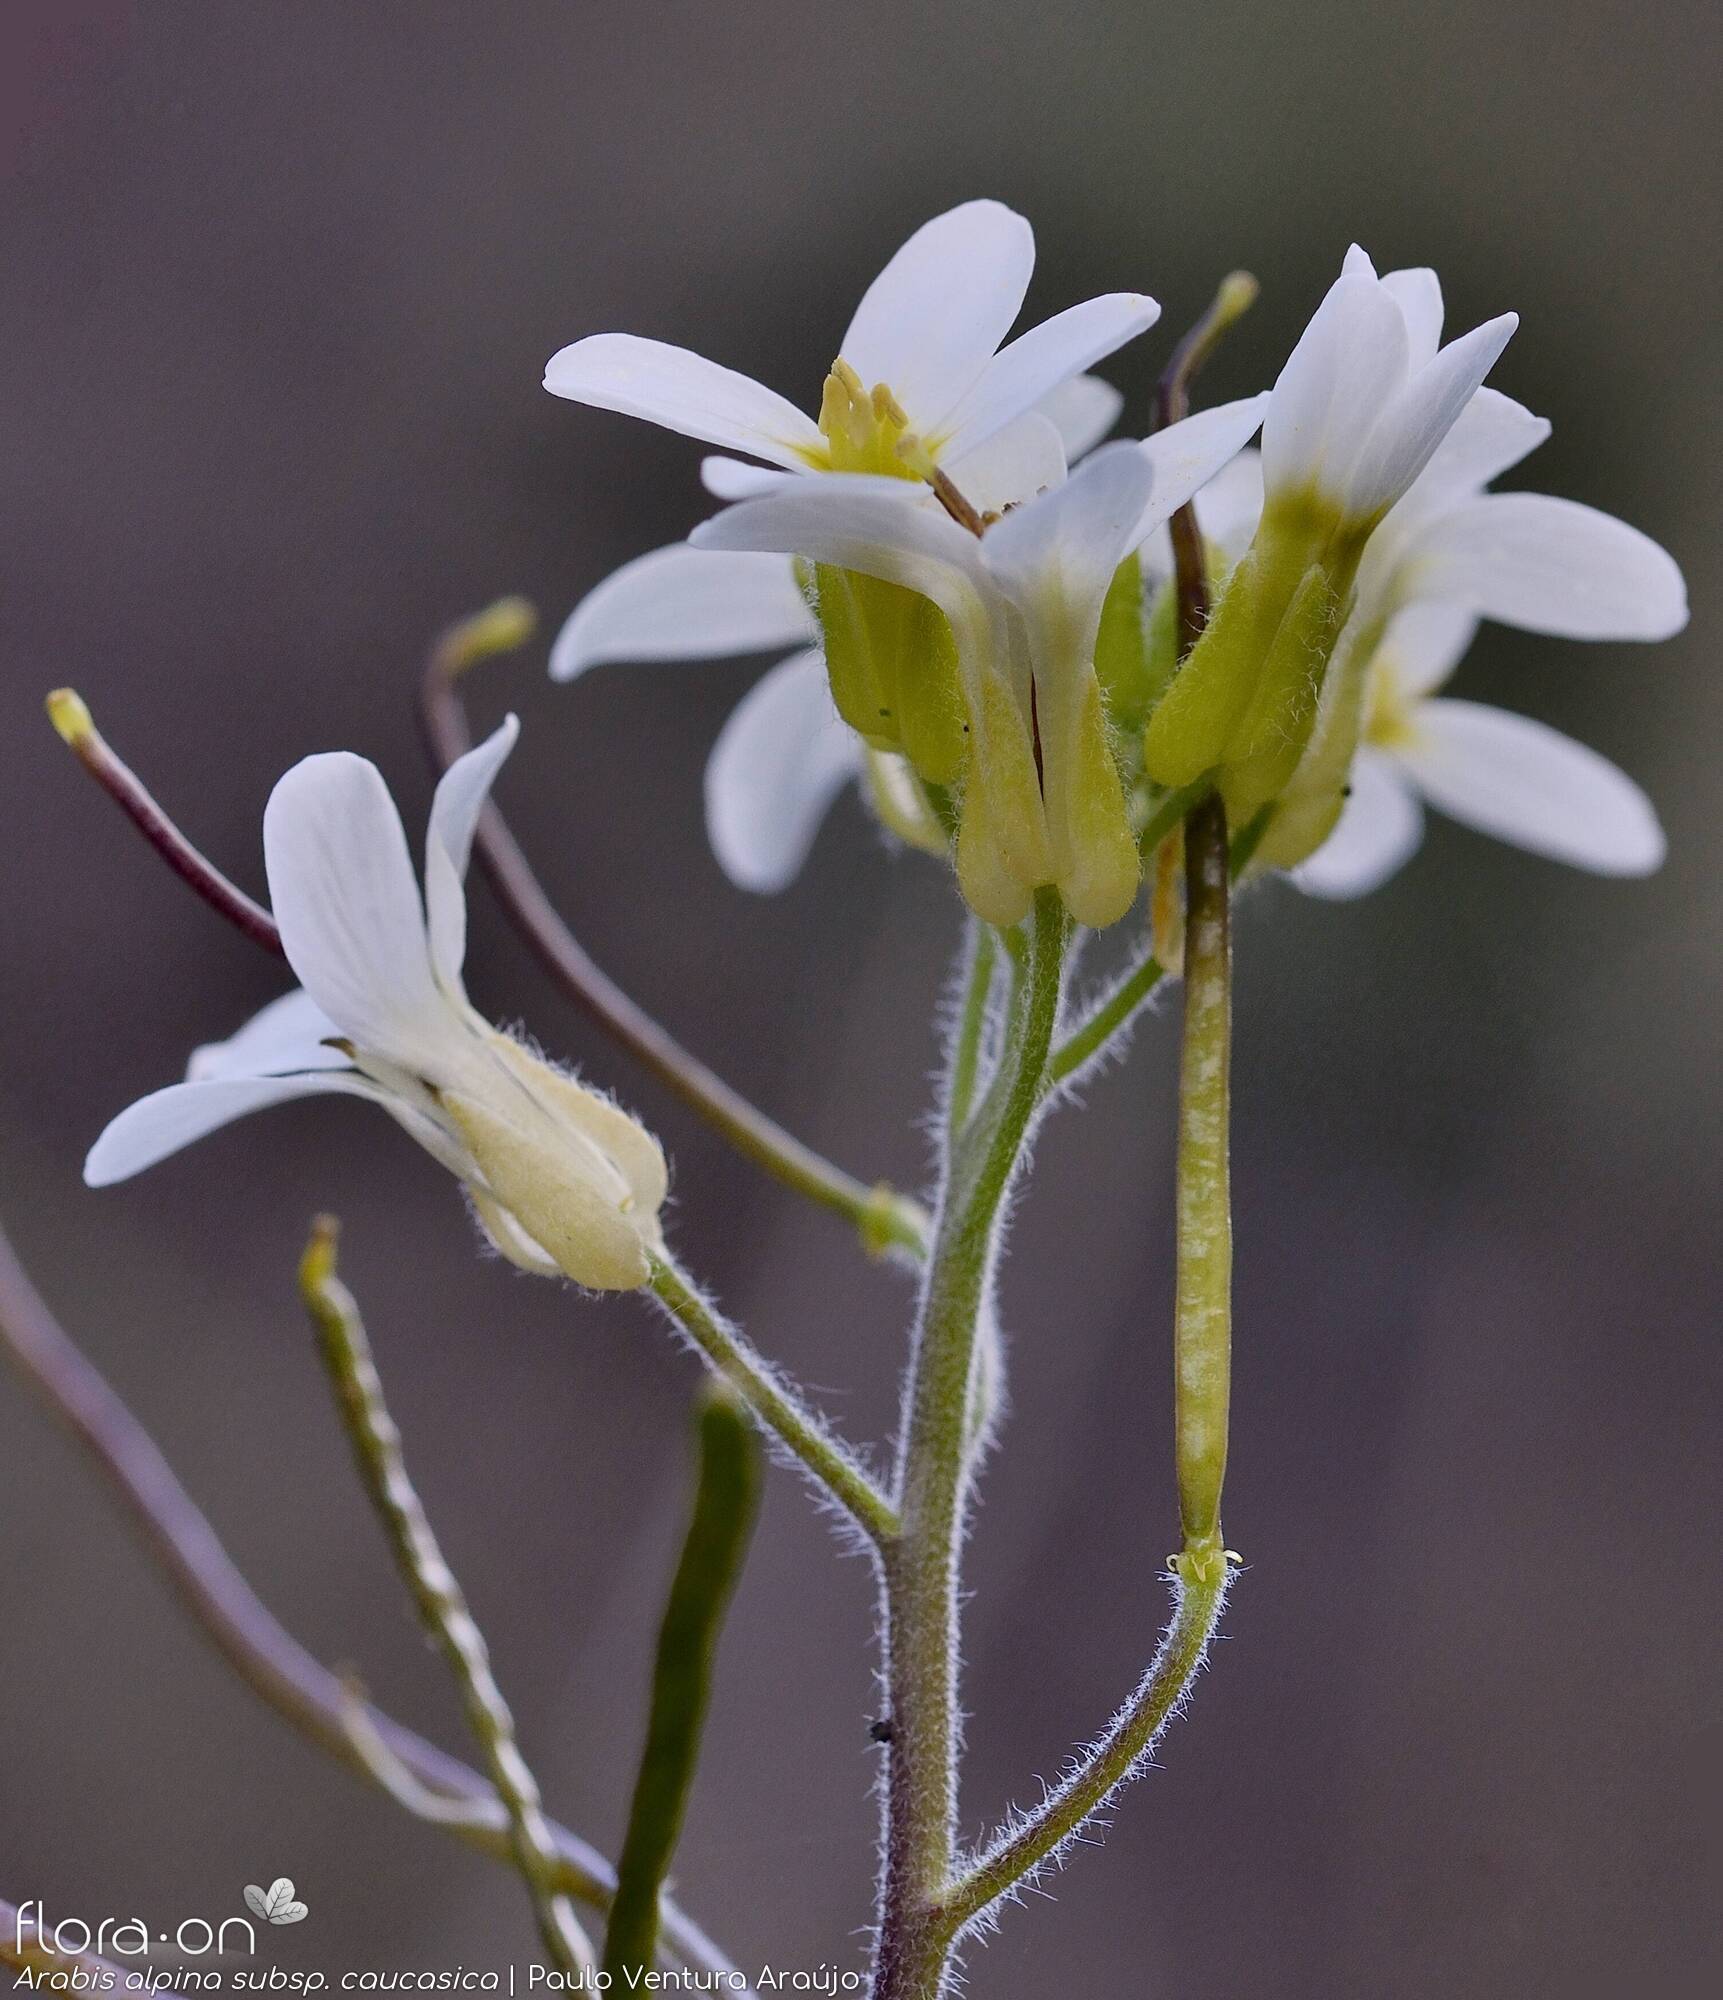 Arabis alpina caucasica - Flor (geral) | Paulo Ventura Araújo; CC BY-NC 4.0